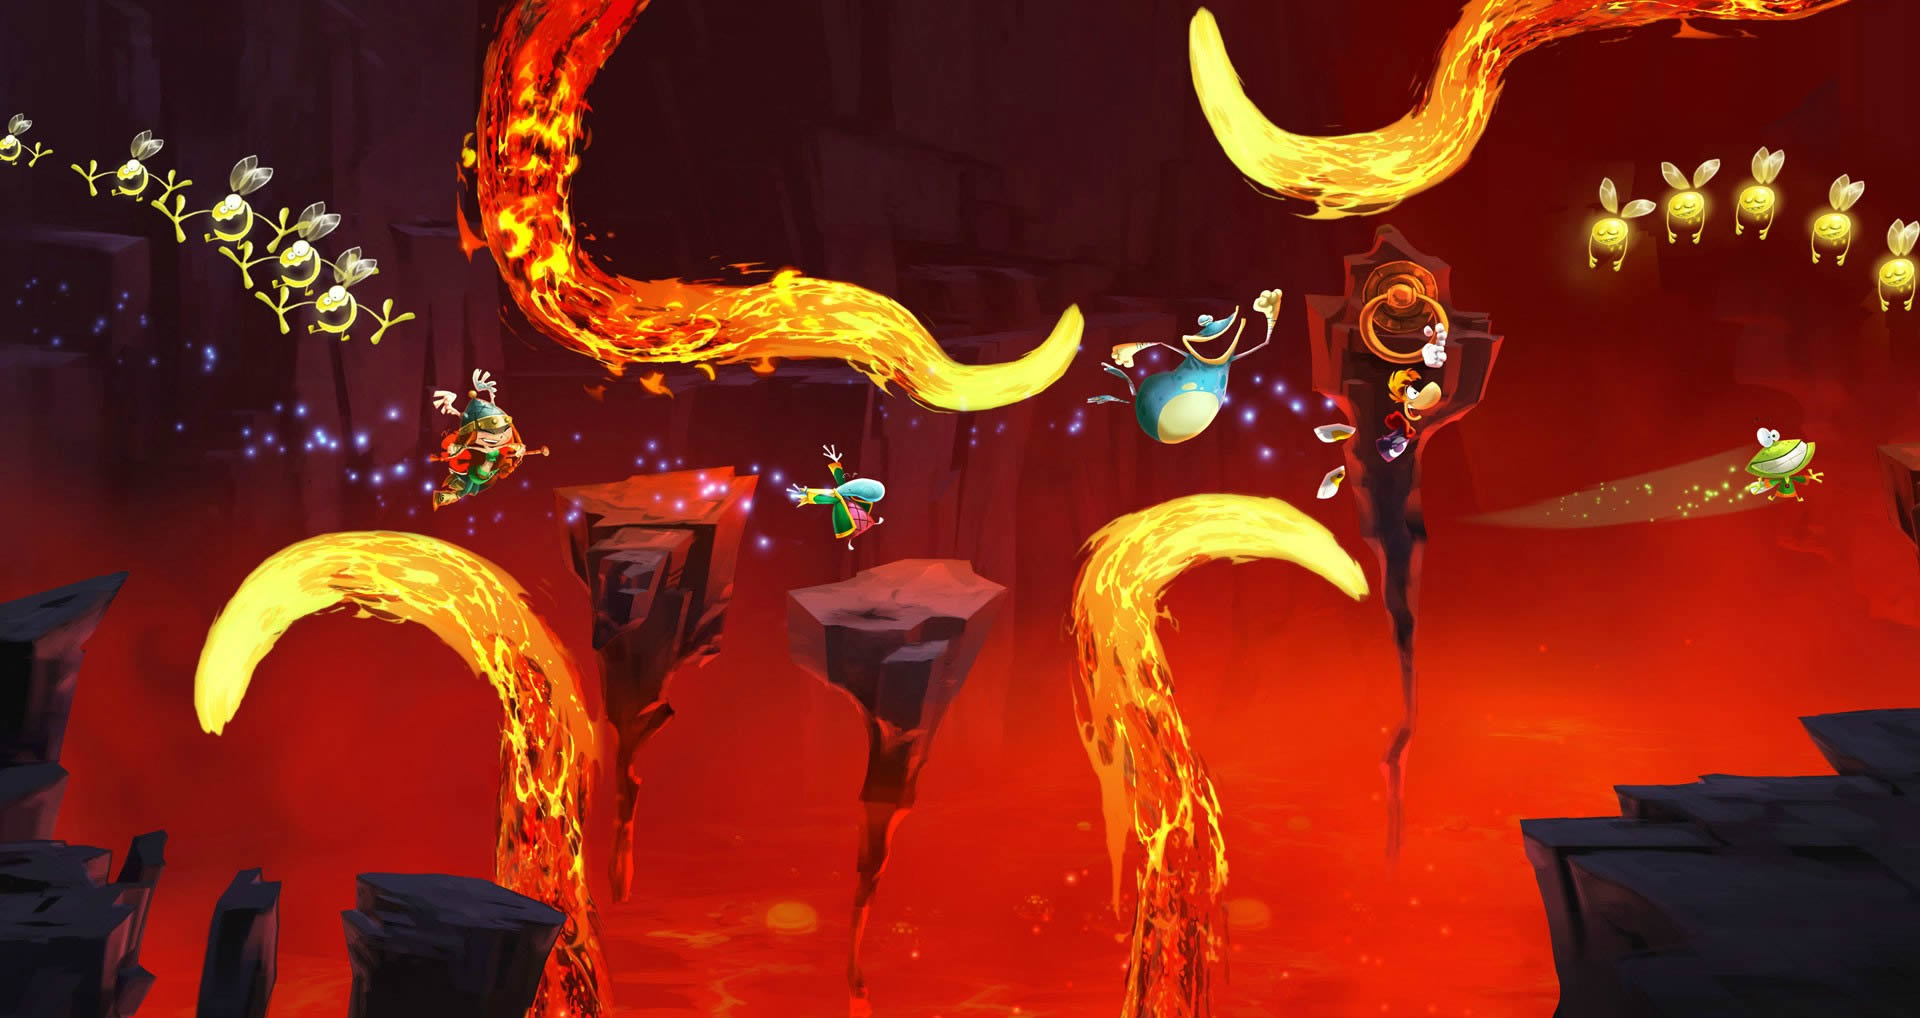 Rayman Legends Fire Level , HD Wallpaper & Backgrounds